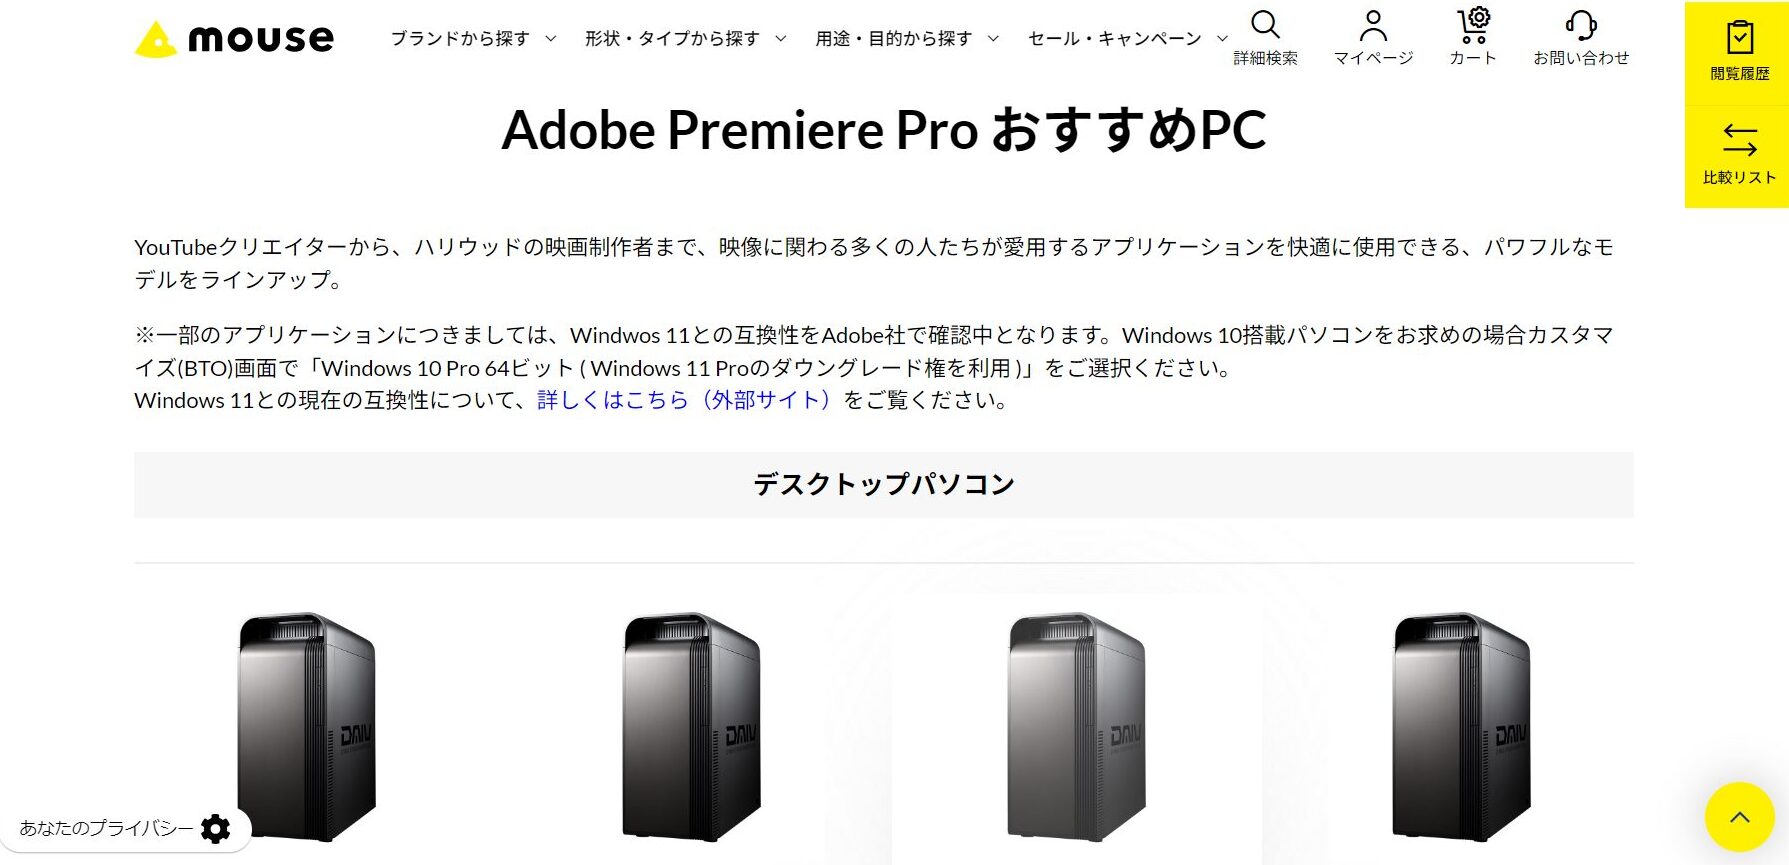 Adobe Premiere Pro おすすめデスクトップPC